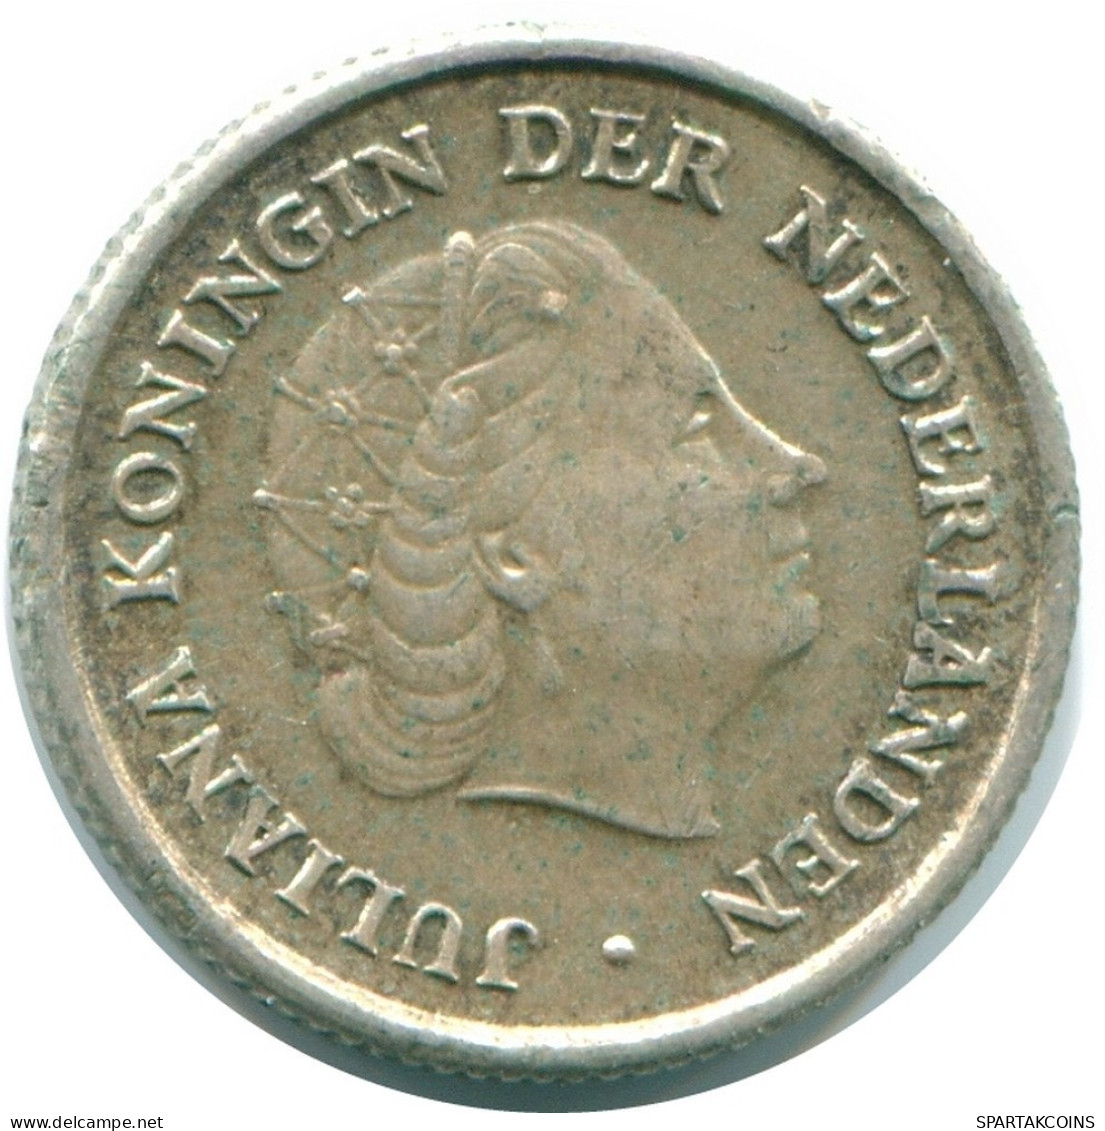 1/10 GULDEN 1956 NIEDERLÄNDISCHE ANTILLEN SILBER Koloniale Münze #NL12106.3.D.A - Niederländische Antillen